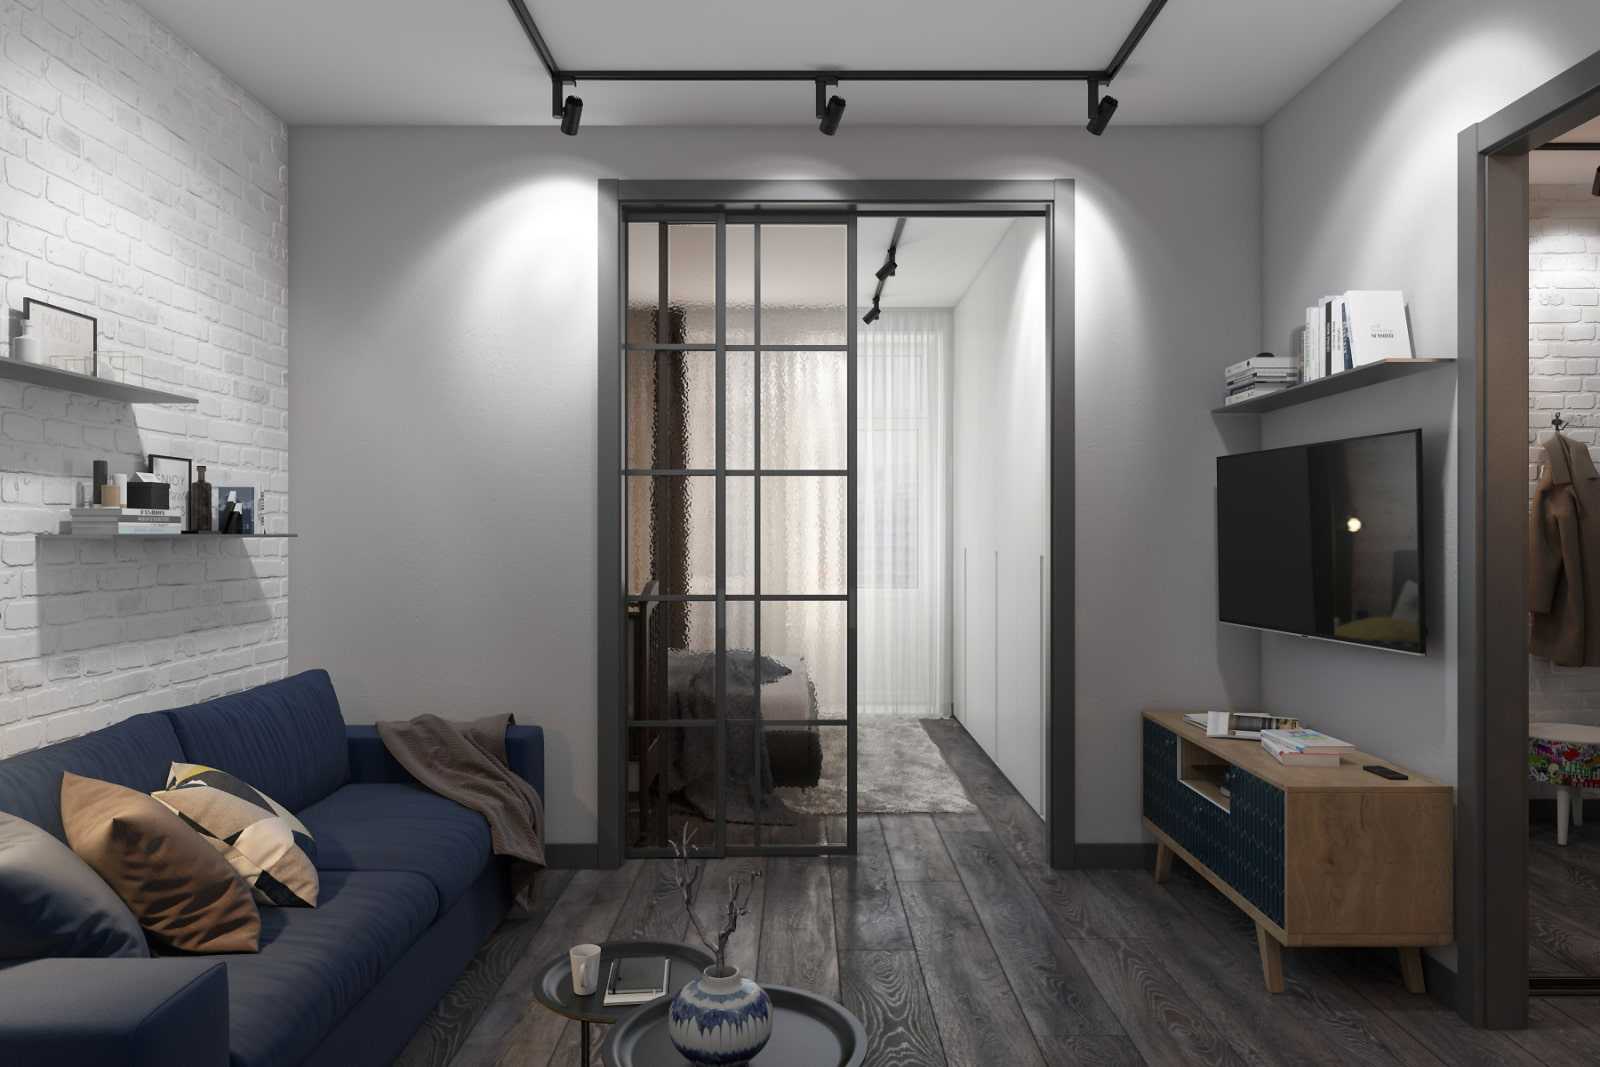 Потрясающий дизайн-проект небольшой квартиры в стиле лофт
потрясающий дизайн-проект небольшой квартиры в стиле лофт